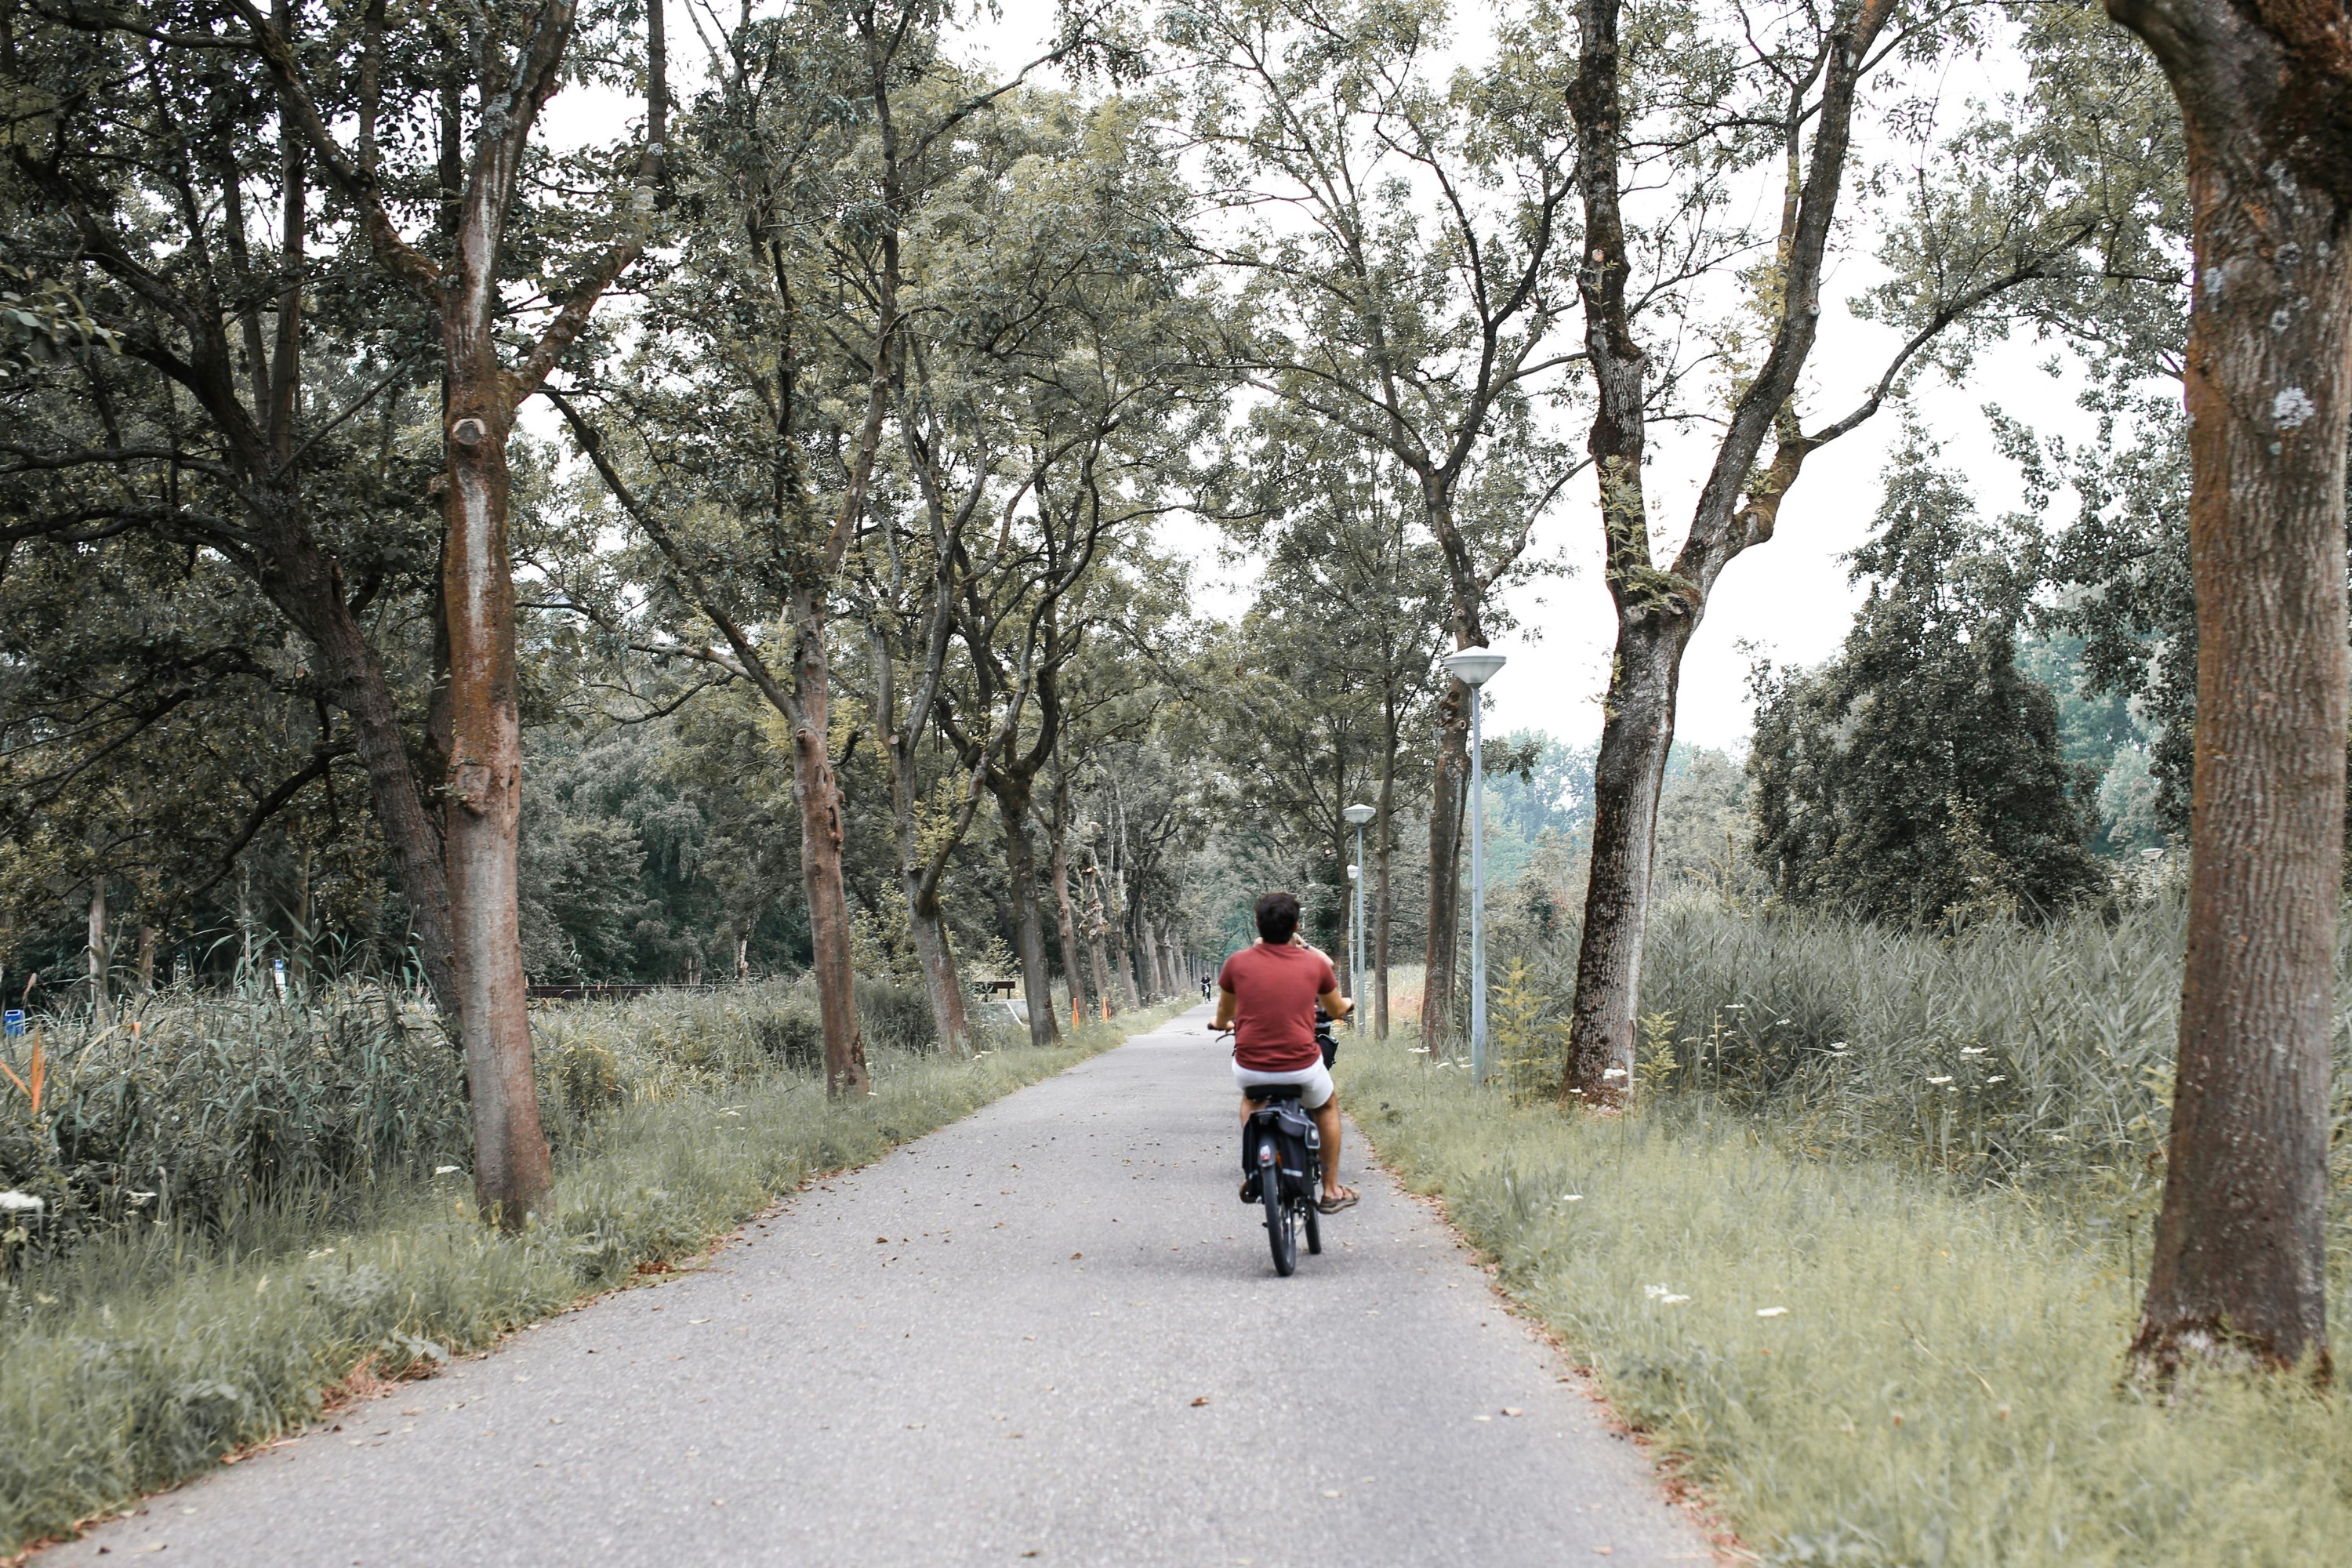 Sentier de vélo avec une personne à vélo de dos.